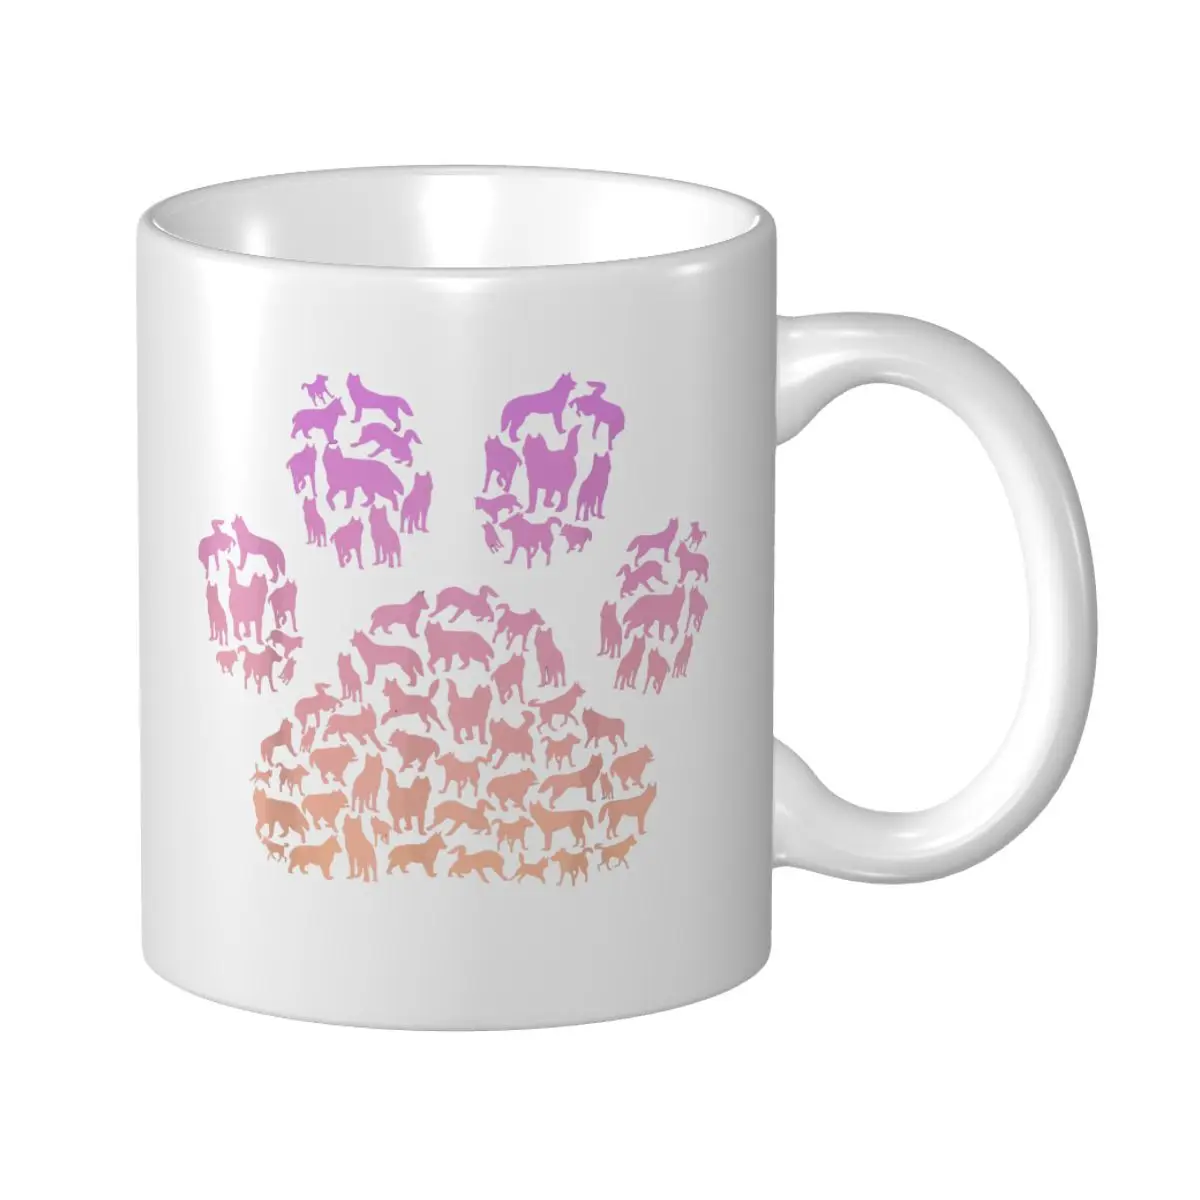 

Кружка Mark Cup с изображением Хаски для сибирской собаки хаски, кофейные кружки для влюбленных девочек, кружки для чая и путешествий для офиса и дома